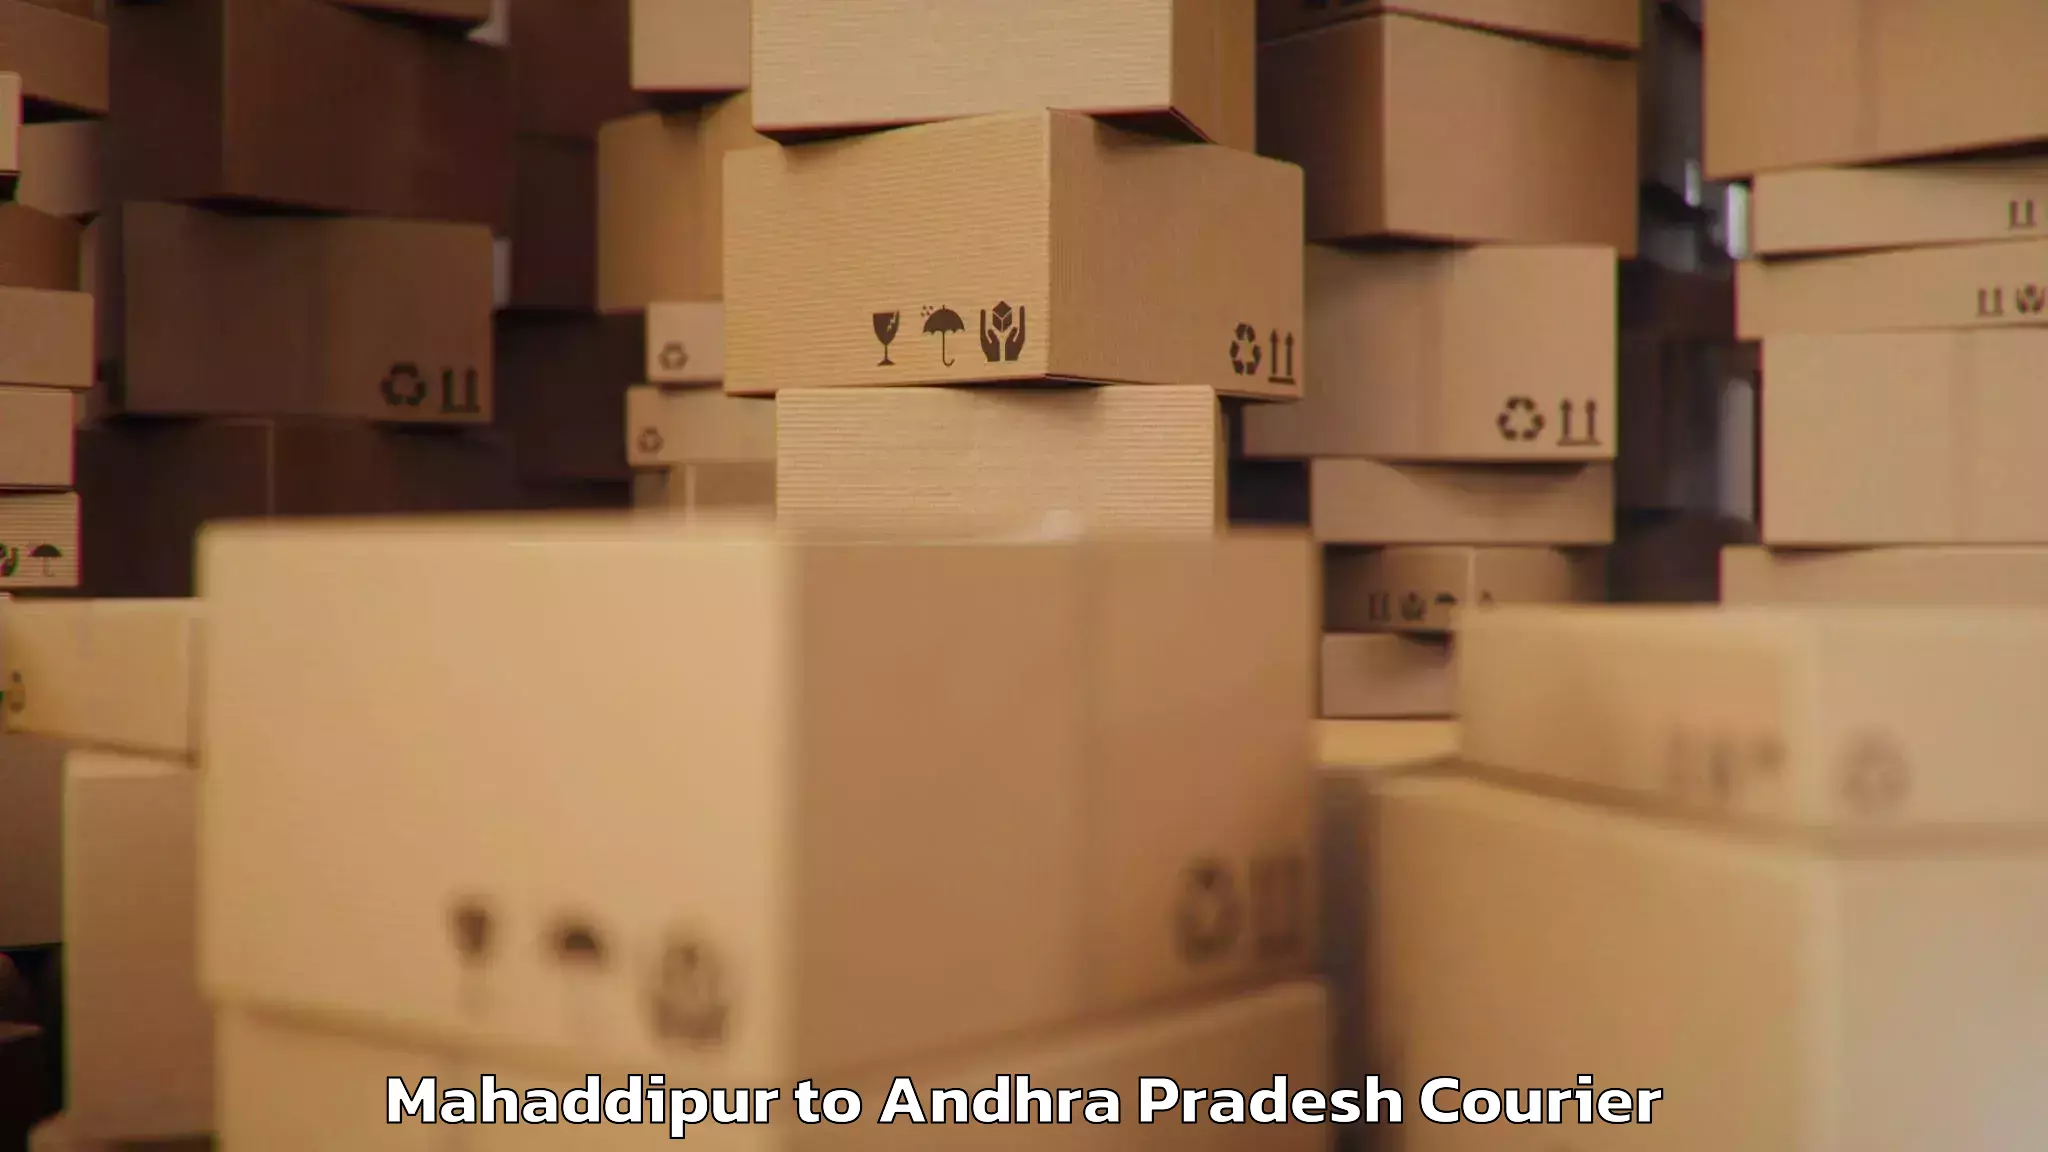 Luggage shipping rates Mahaddipur to Galiveedu